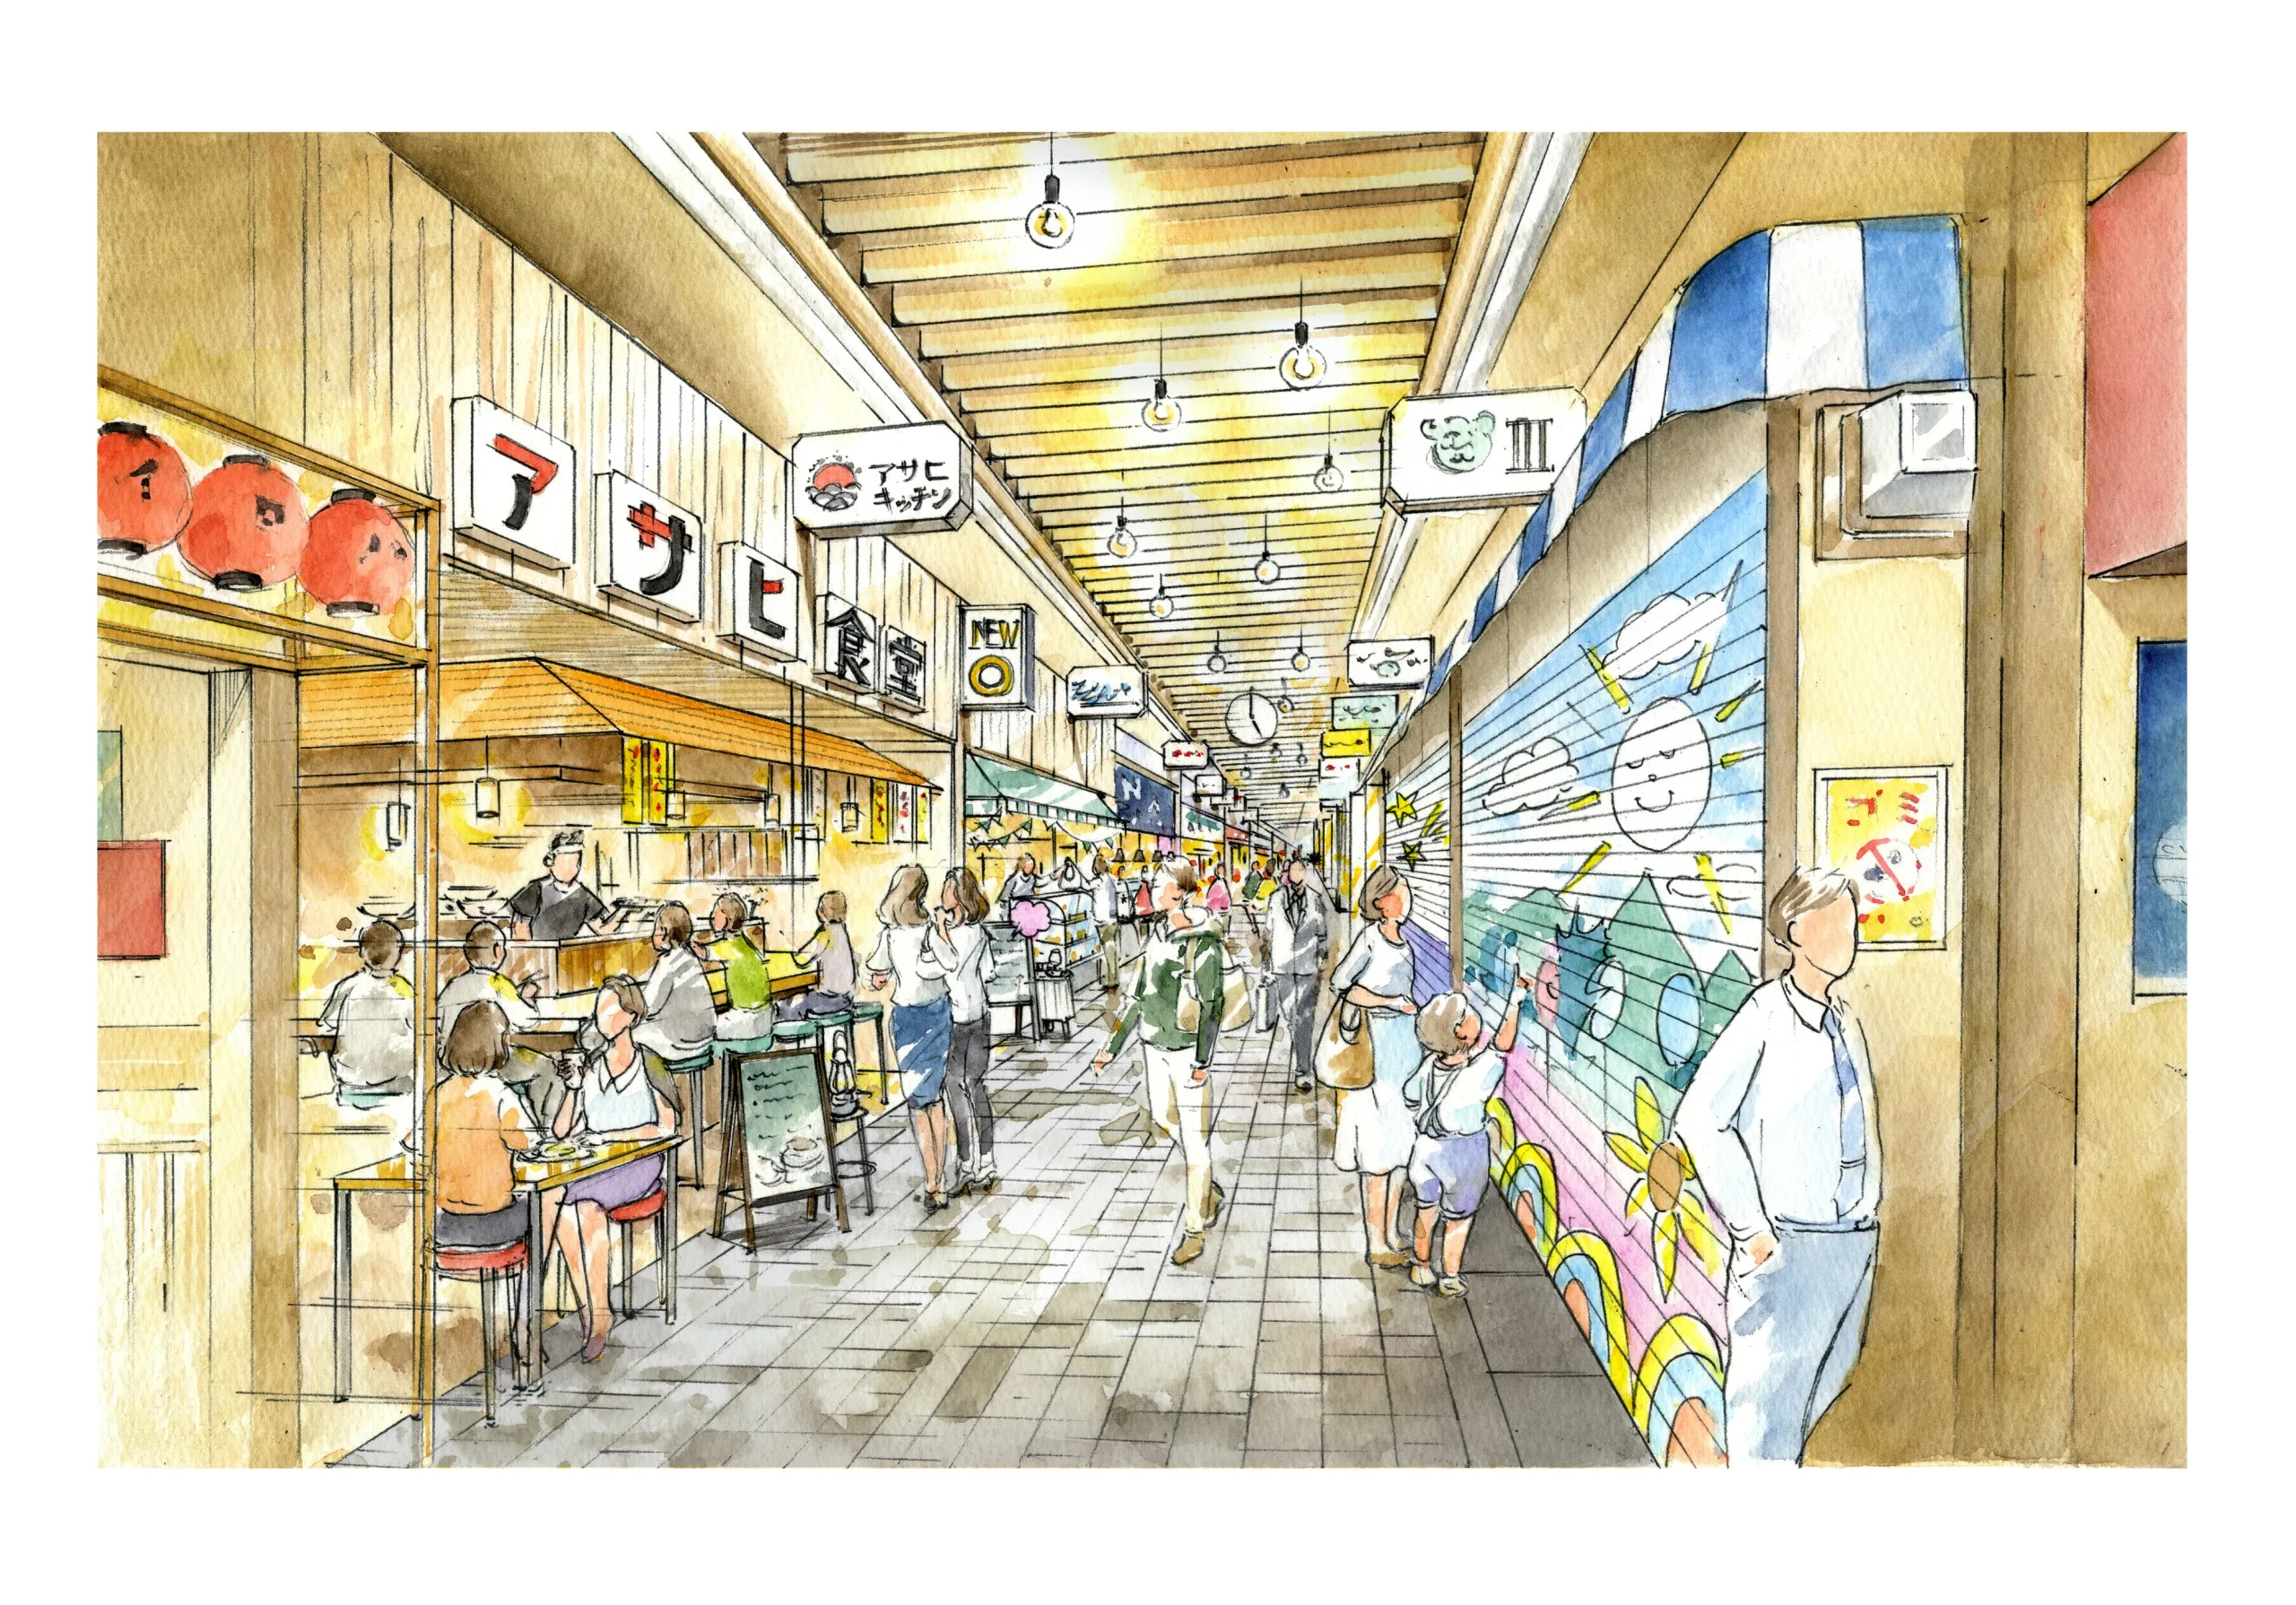 新旭町通り商店街の一部を「吹田・アサヒキッチン」としてリニューアルするプロジェクトを始動します